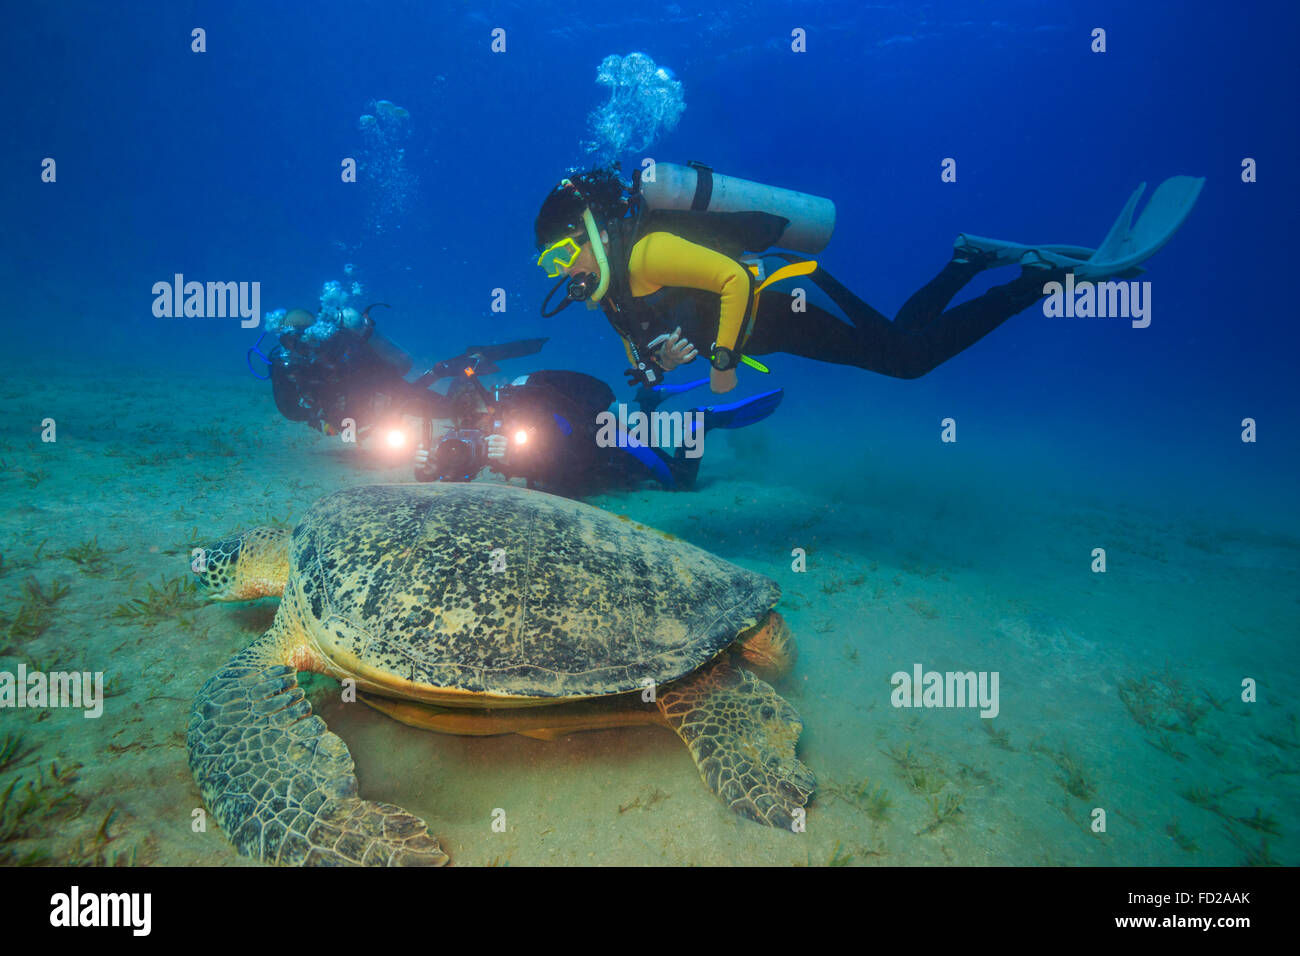 Abu, l'activité, des animaux, des tortues, l'arrière-plan, beau, beauté, bleu, chelonia, couleur, coloré, Coral, dabbab, profonde, plongée, plongeur Banque D'Images